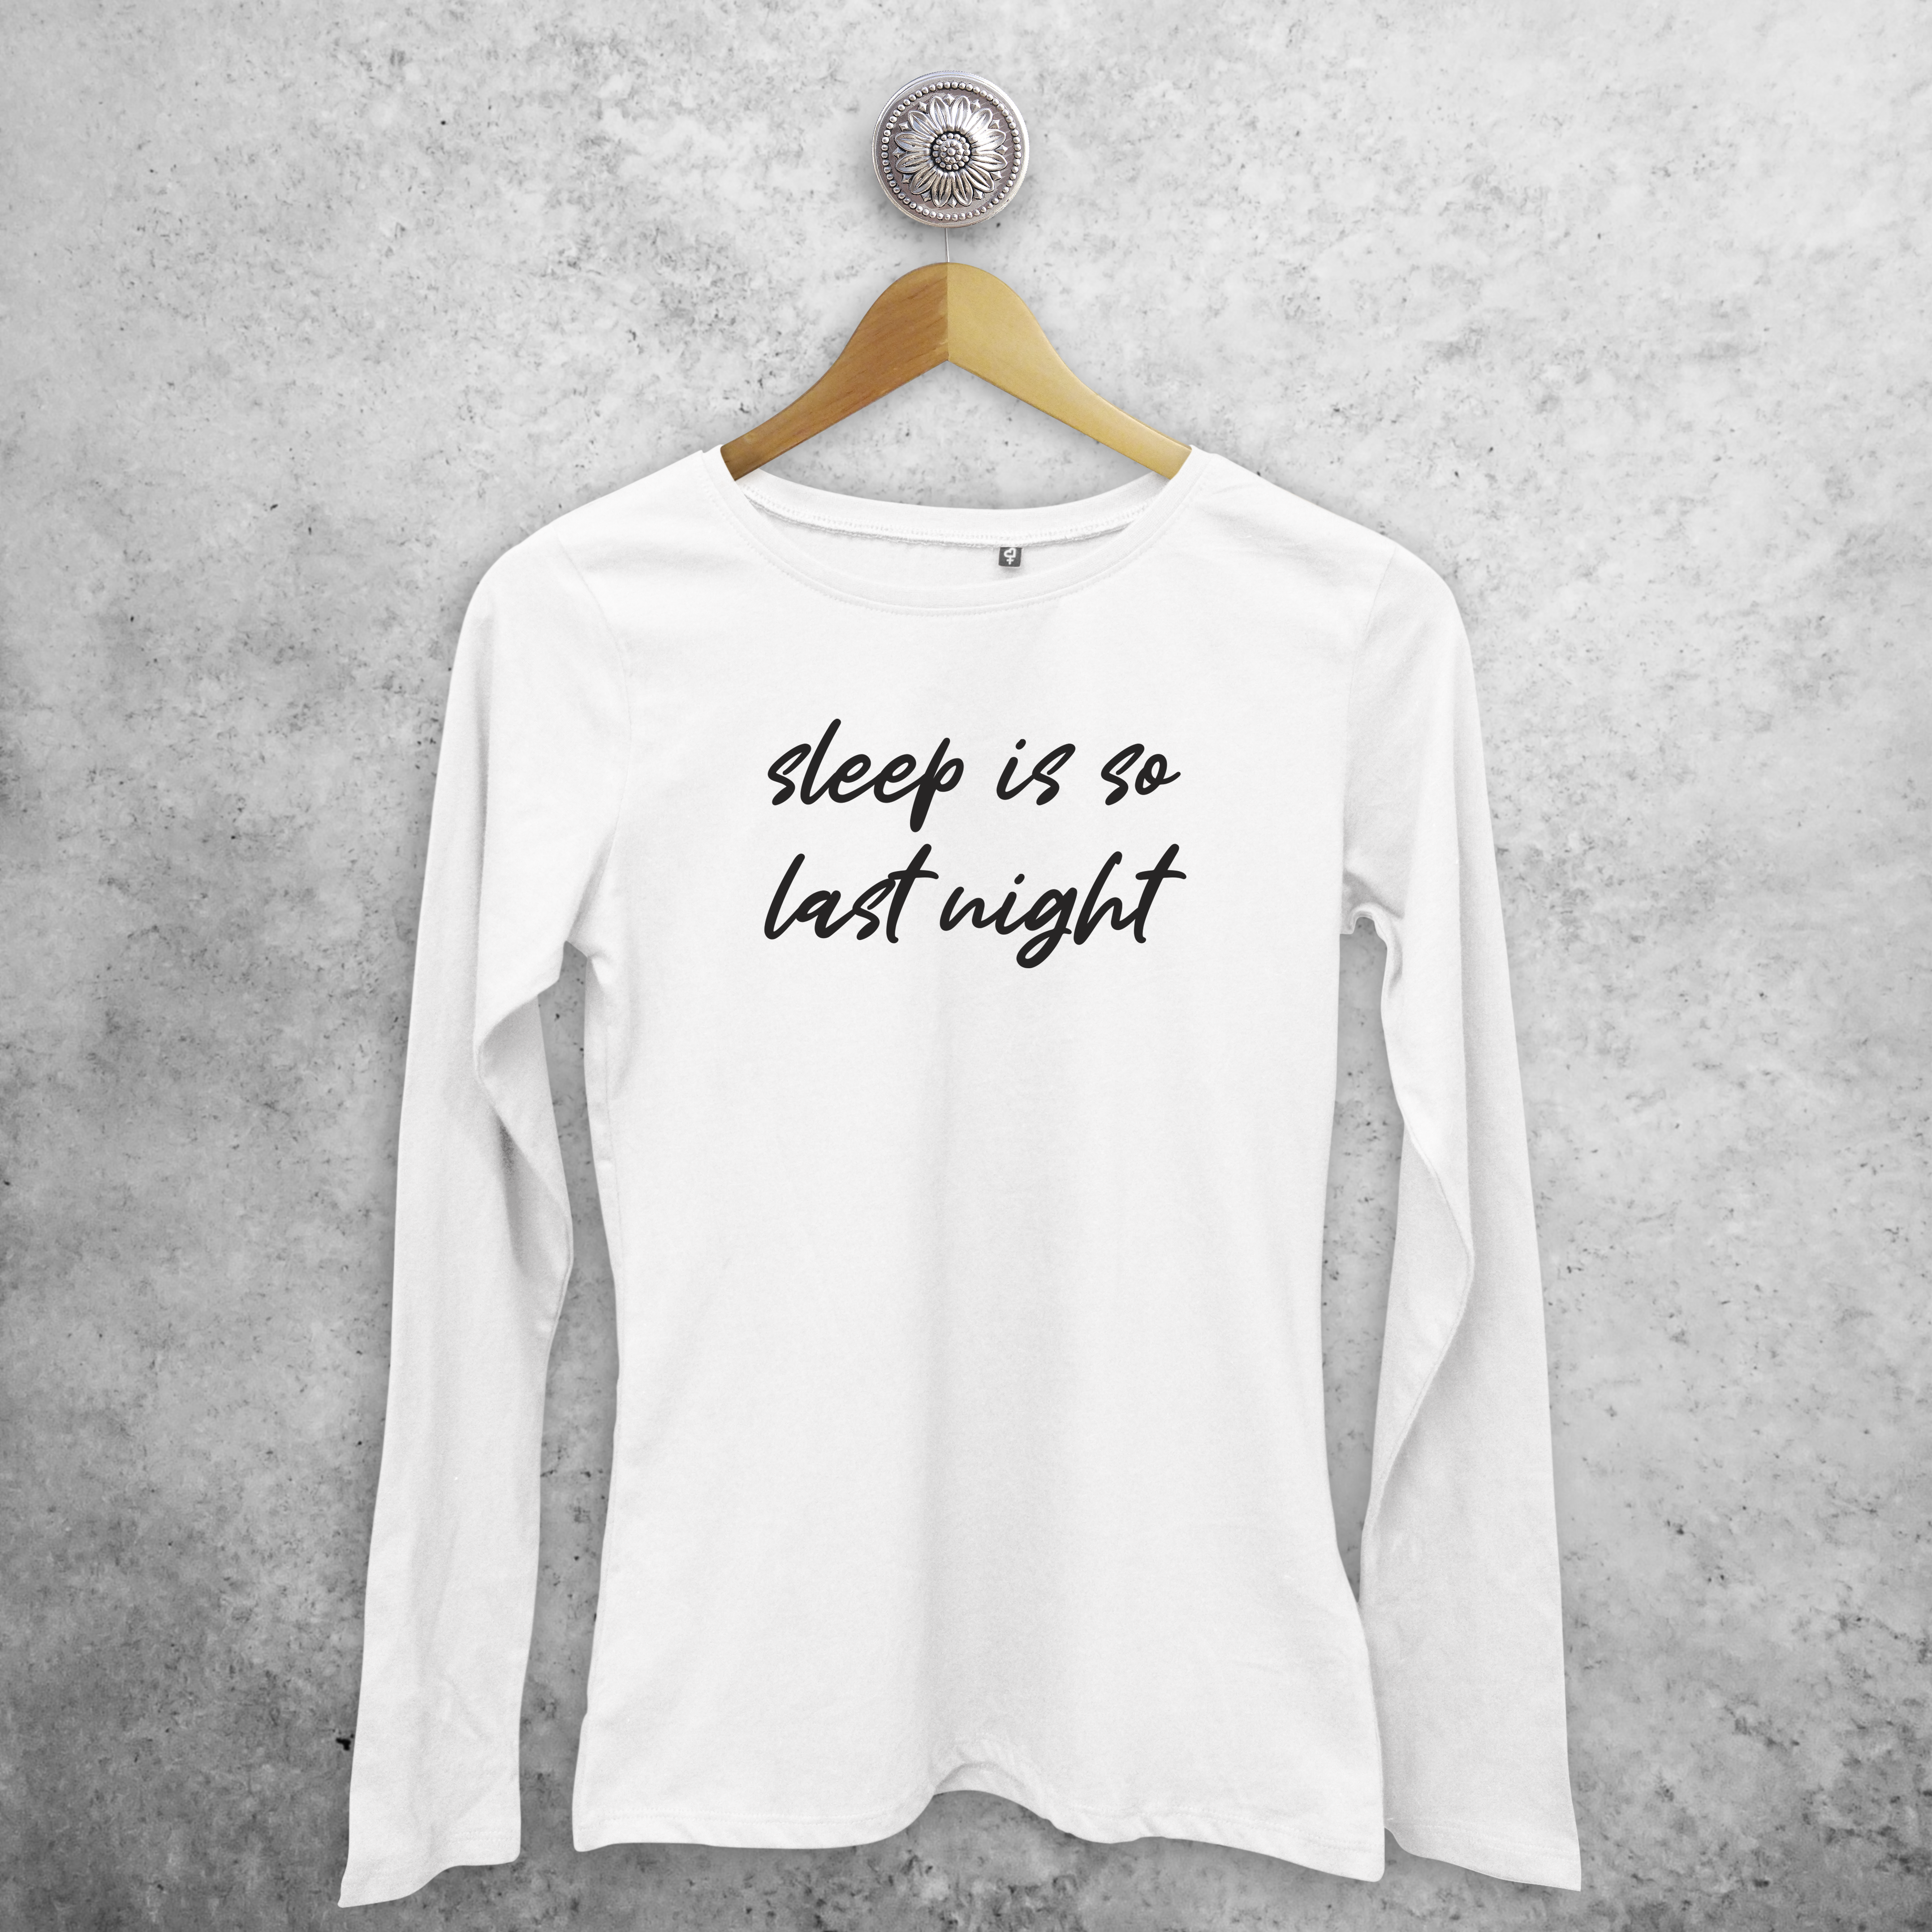 'Sleep is so last night' adult longsleeve shirt